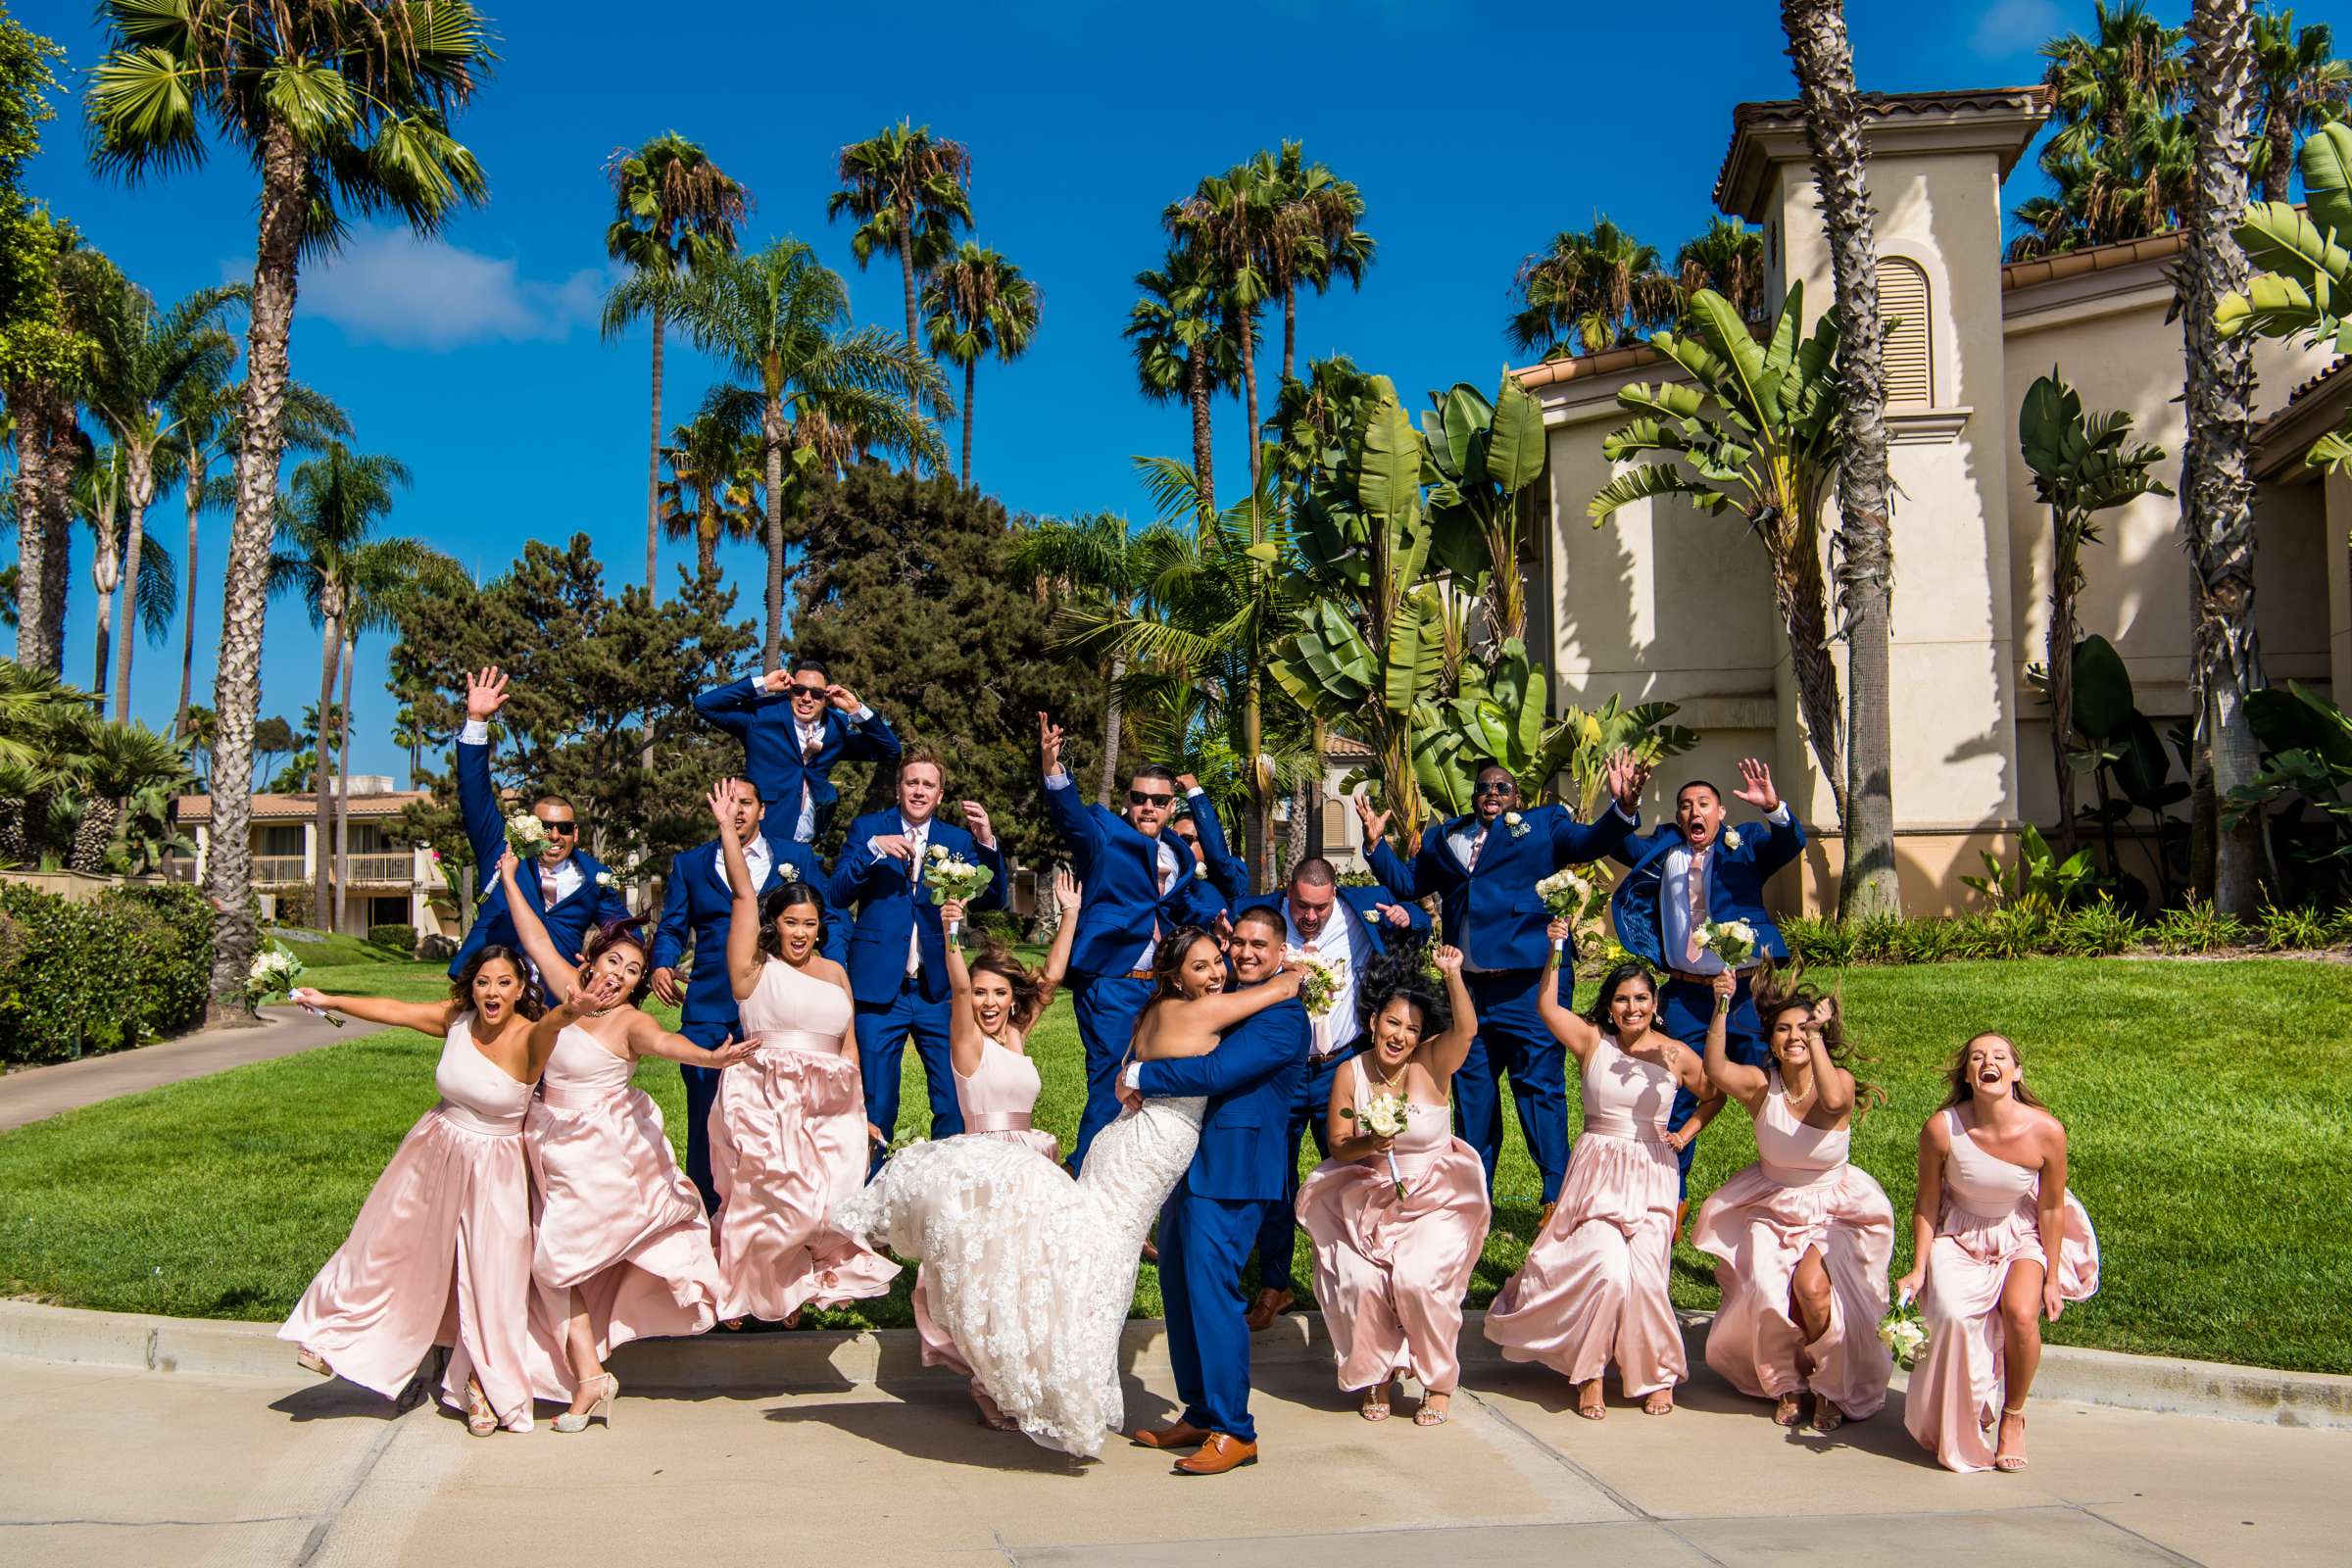 San Diego Mission Bay Resort Wedding, Annie and Edward Wedding Photo #20 by True Photography